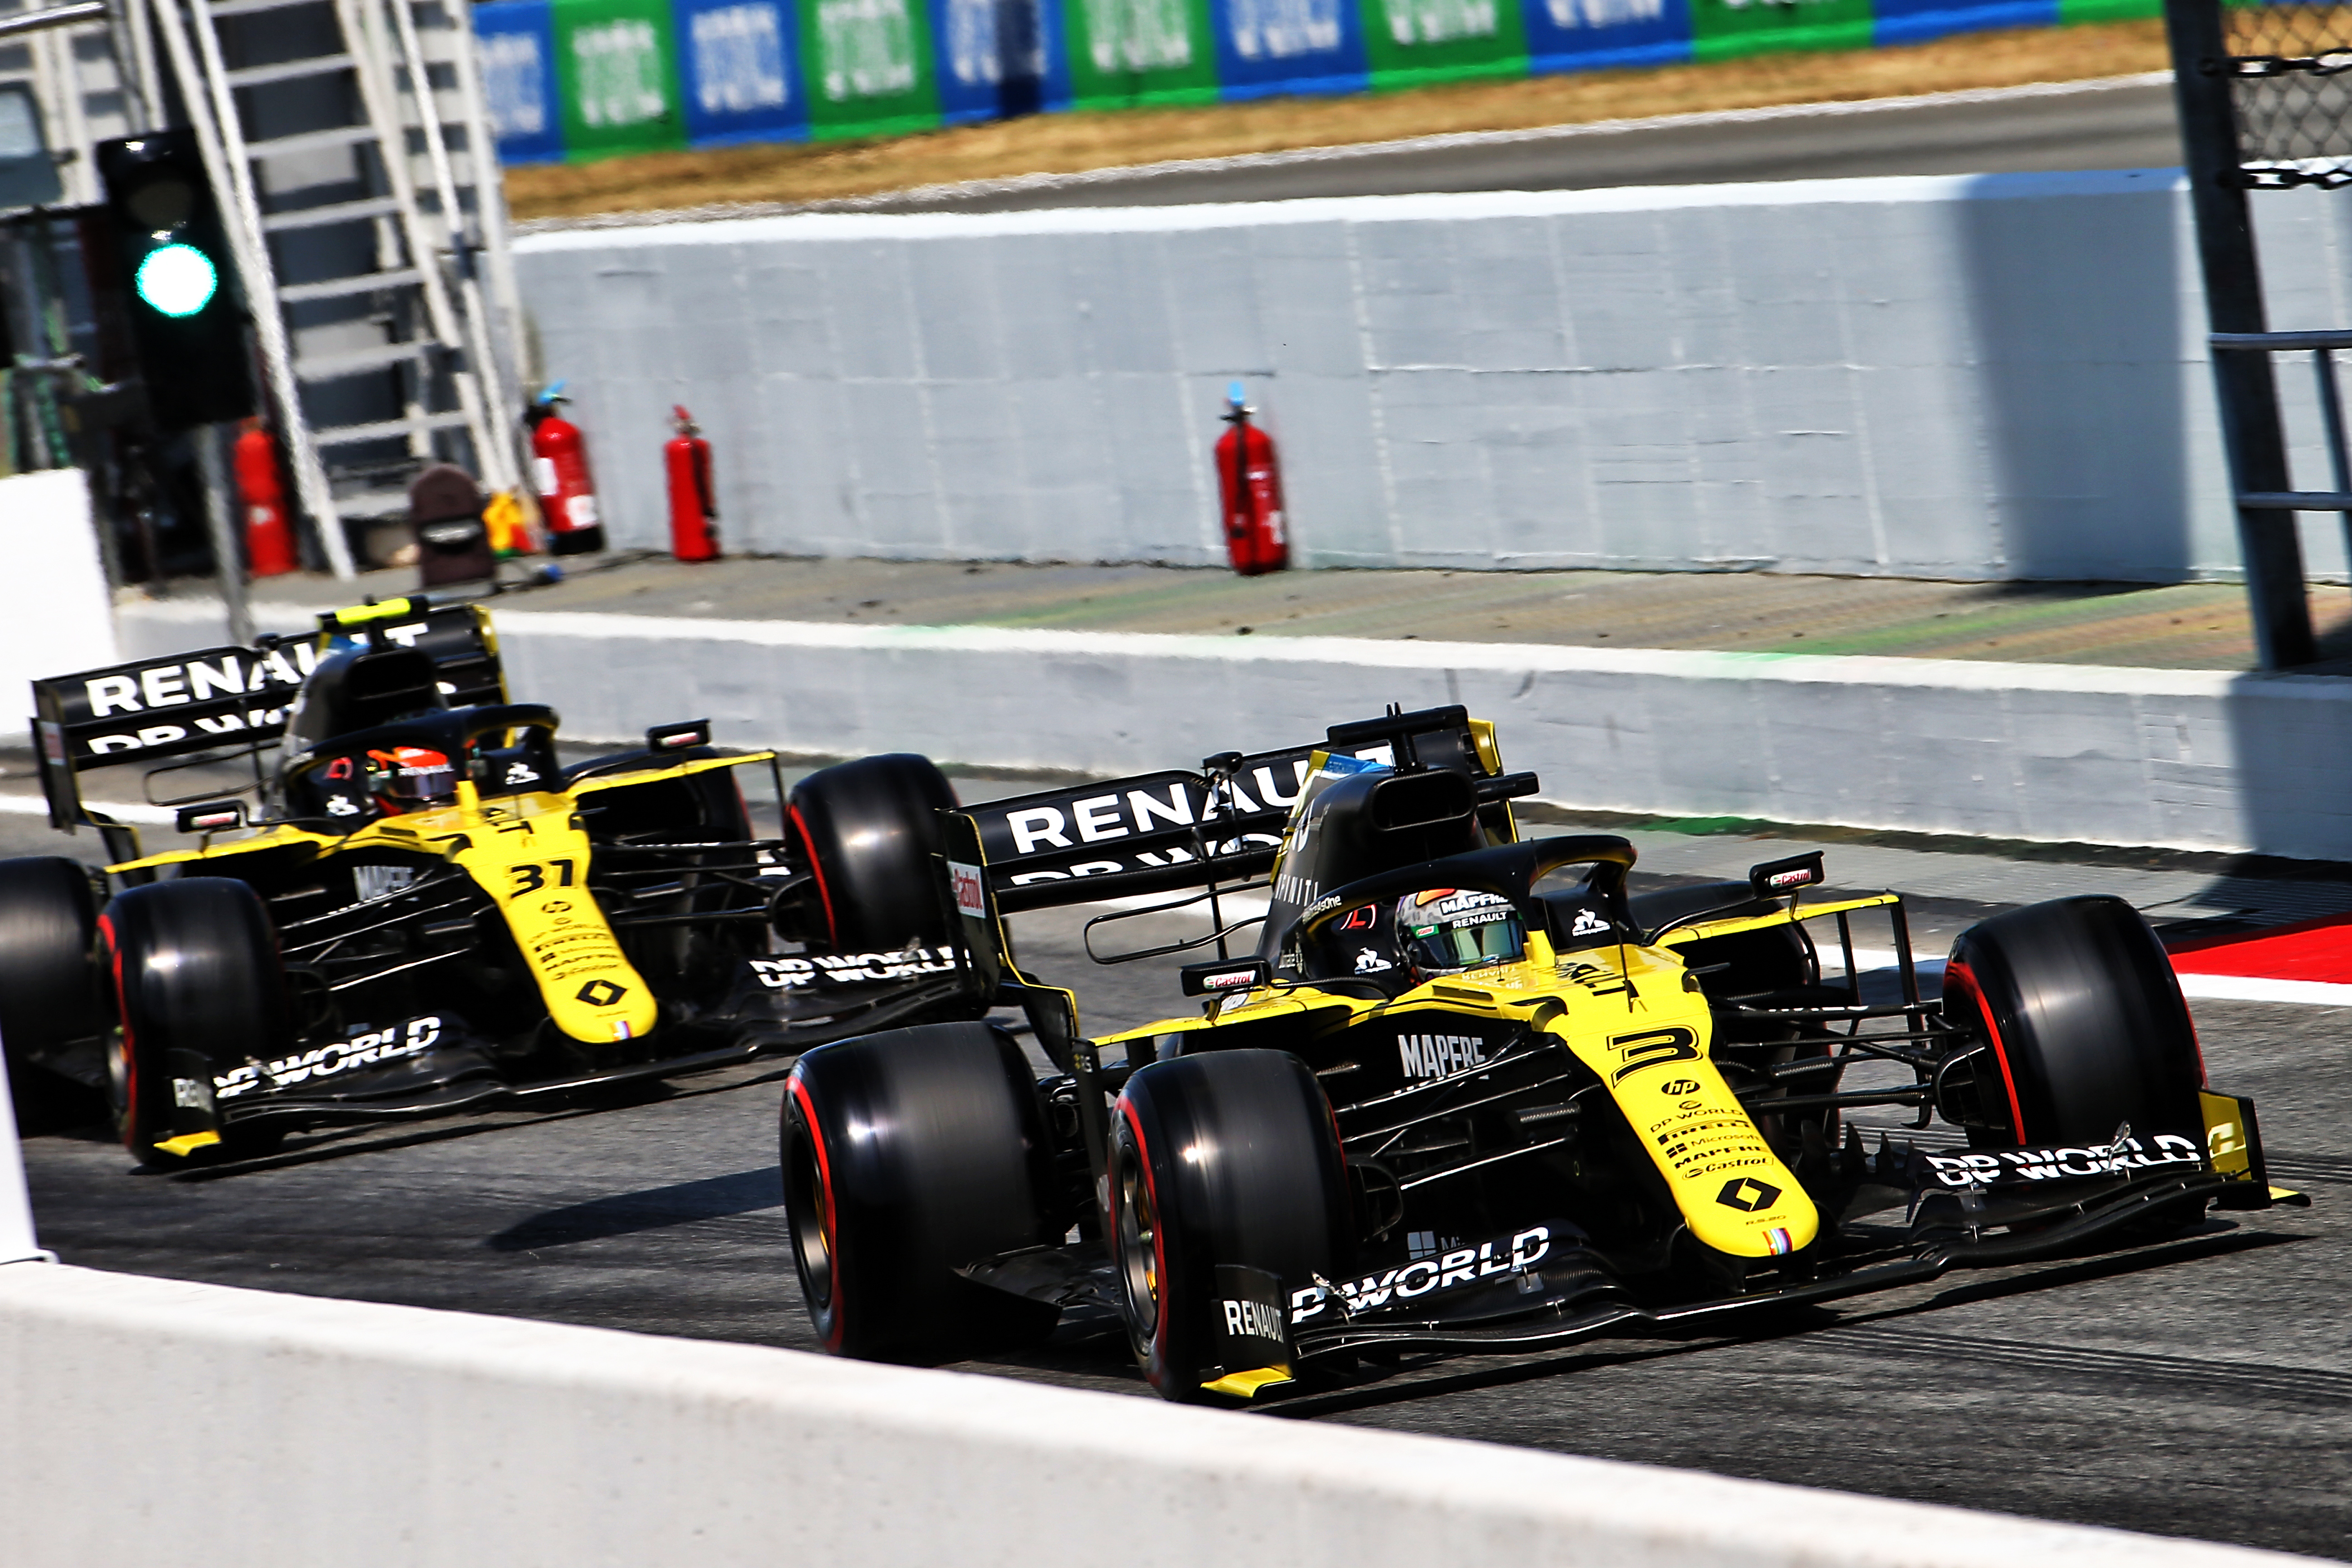 Daniel Ricciardo Esteban Ocon Renault Spanish Grand Prix 2020 Barcelona